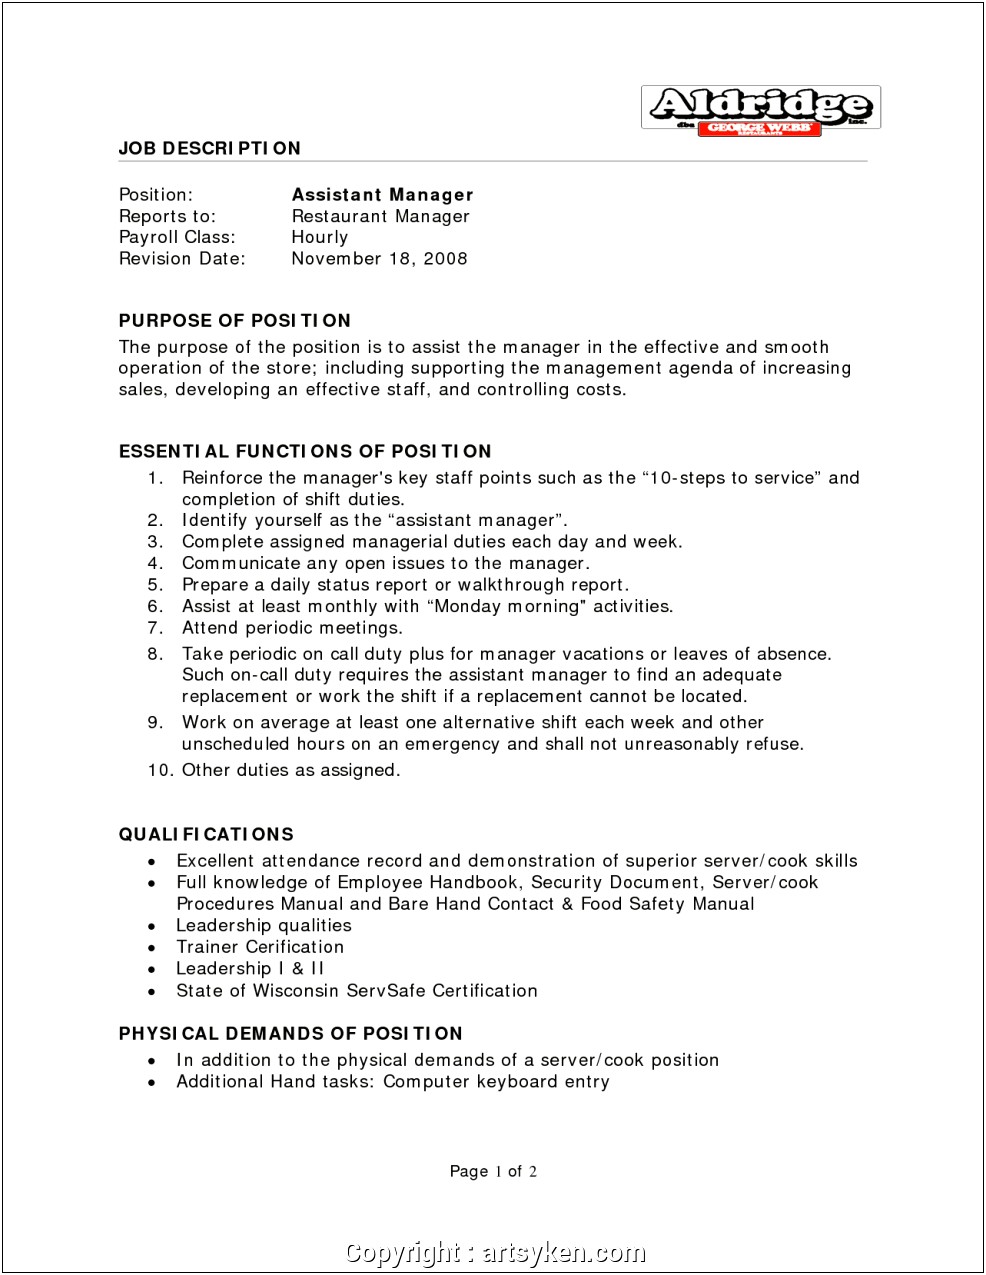 Safety Manager Job Description Resume